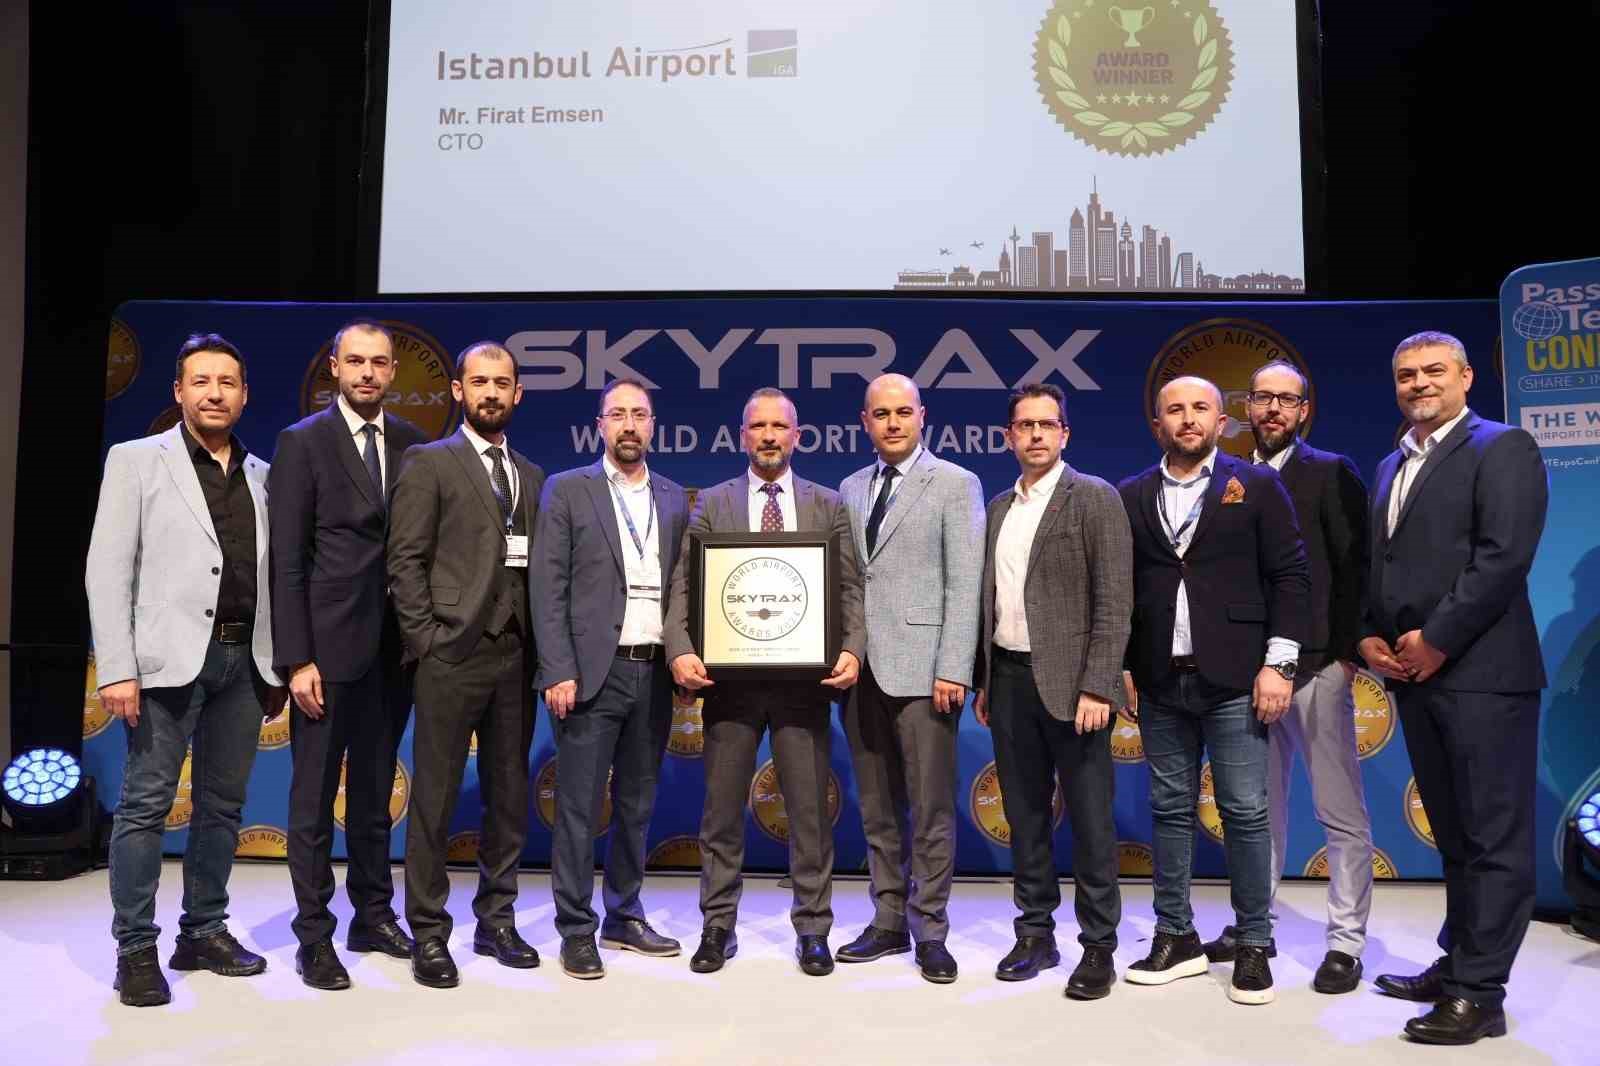 skytrax’tan dünyanın en iyi 10 havalimanı arasına giren i̇stanbul havalimanı’na iki ödül